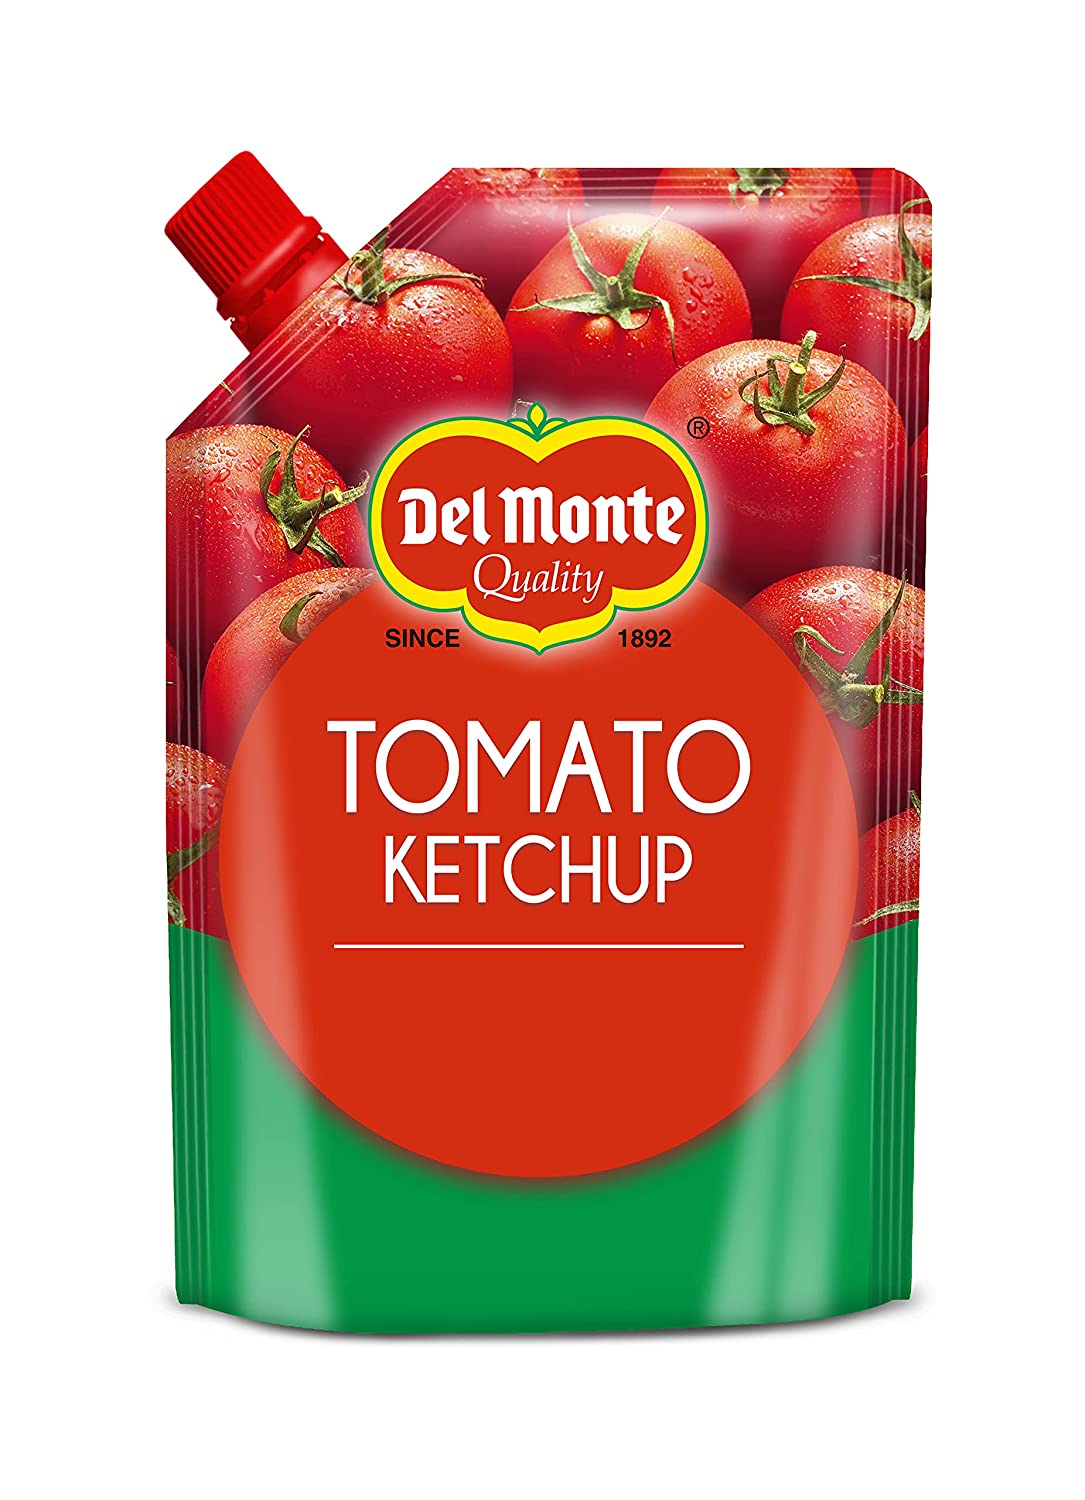 Del Monte Tomato Ketchup Image